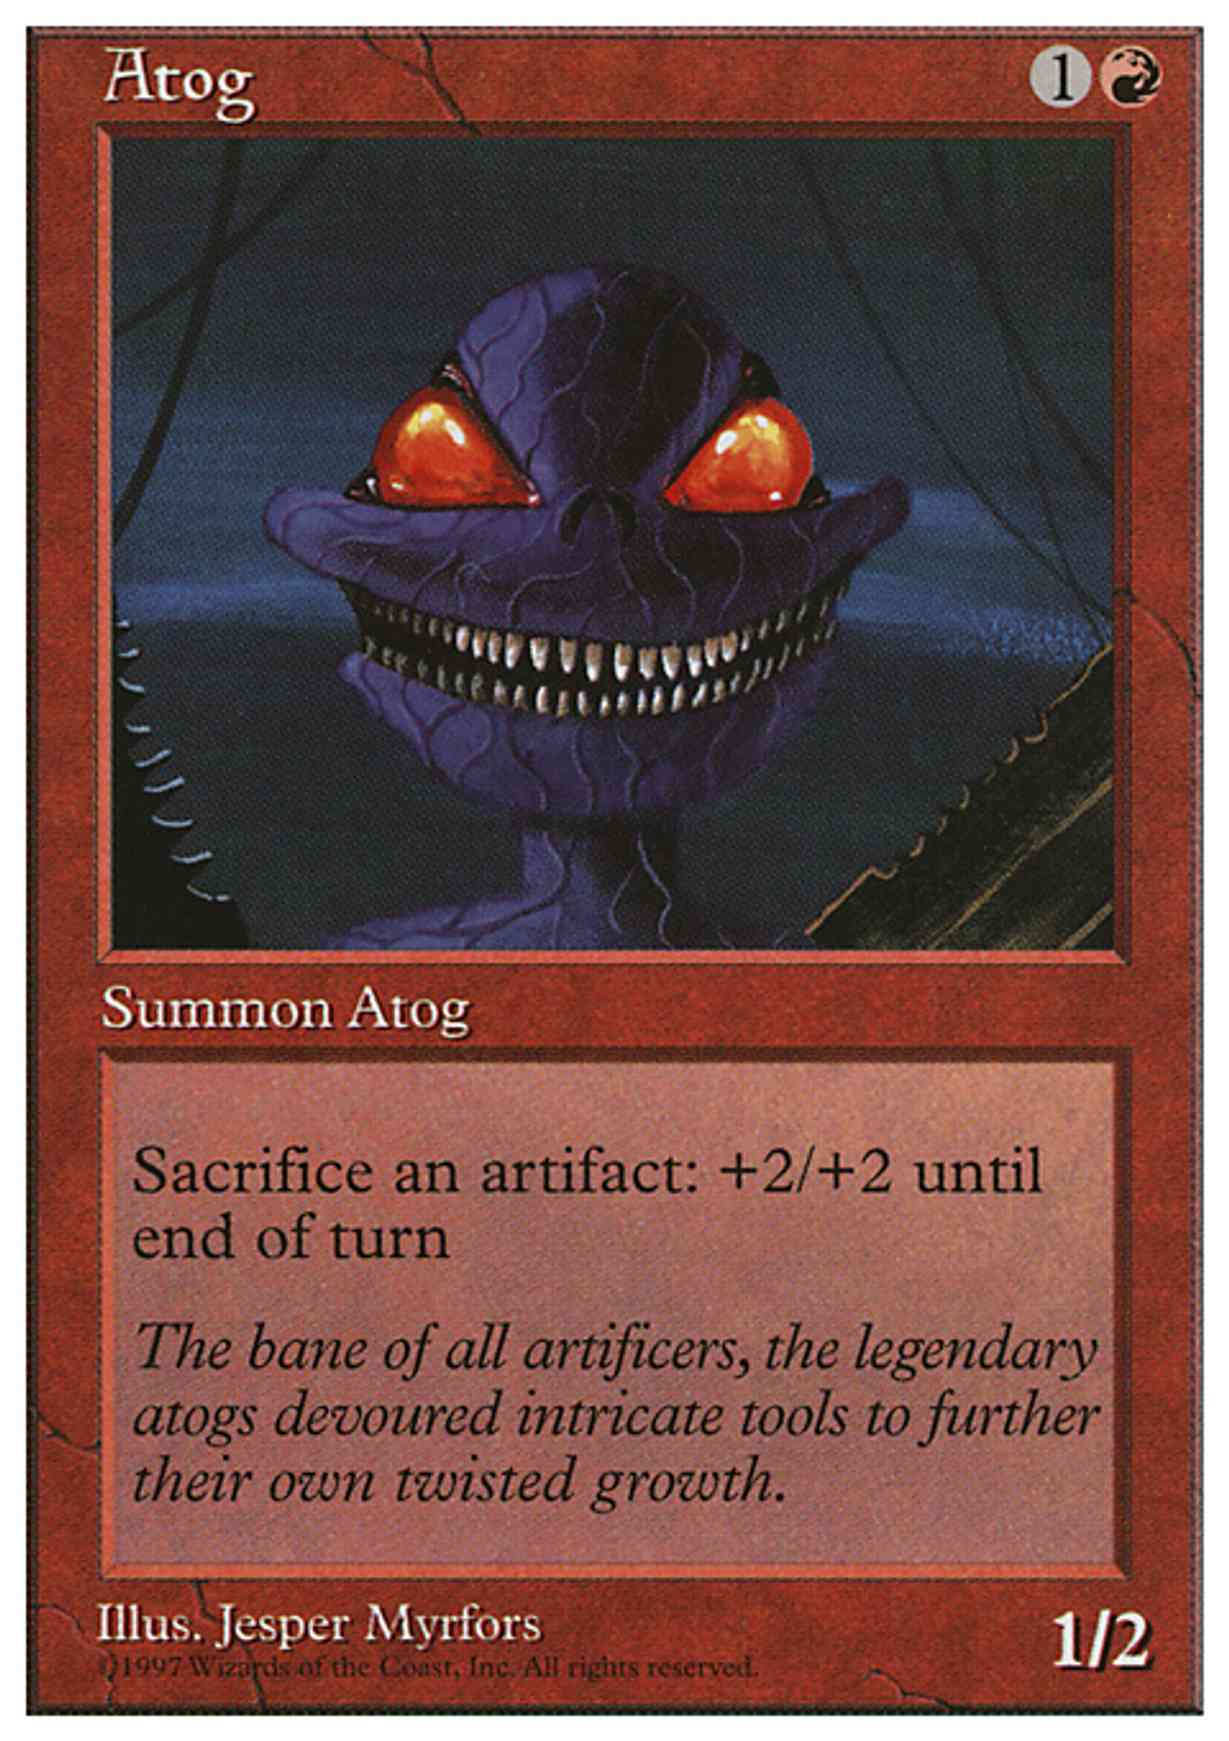 Atog magic card front